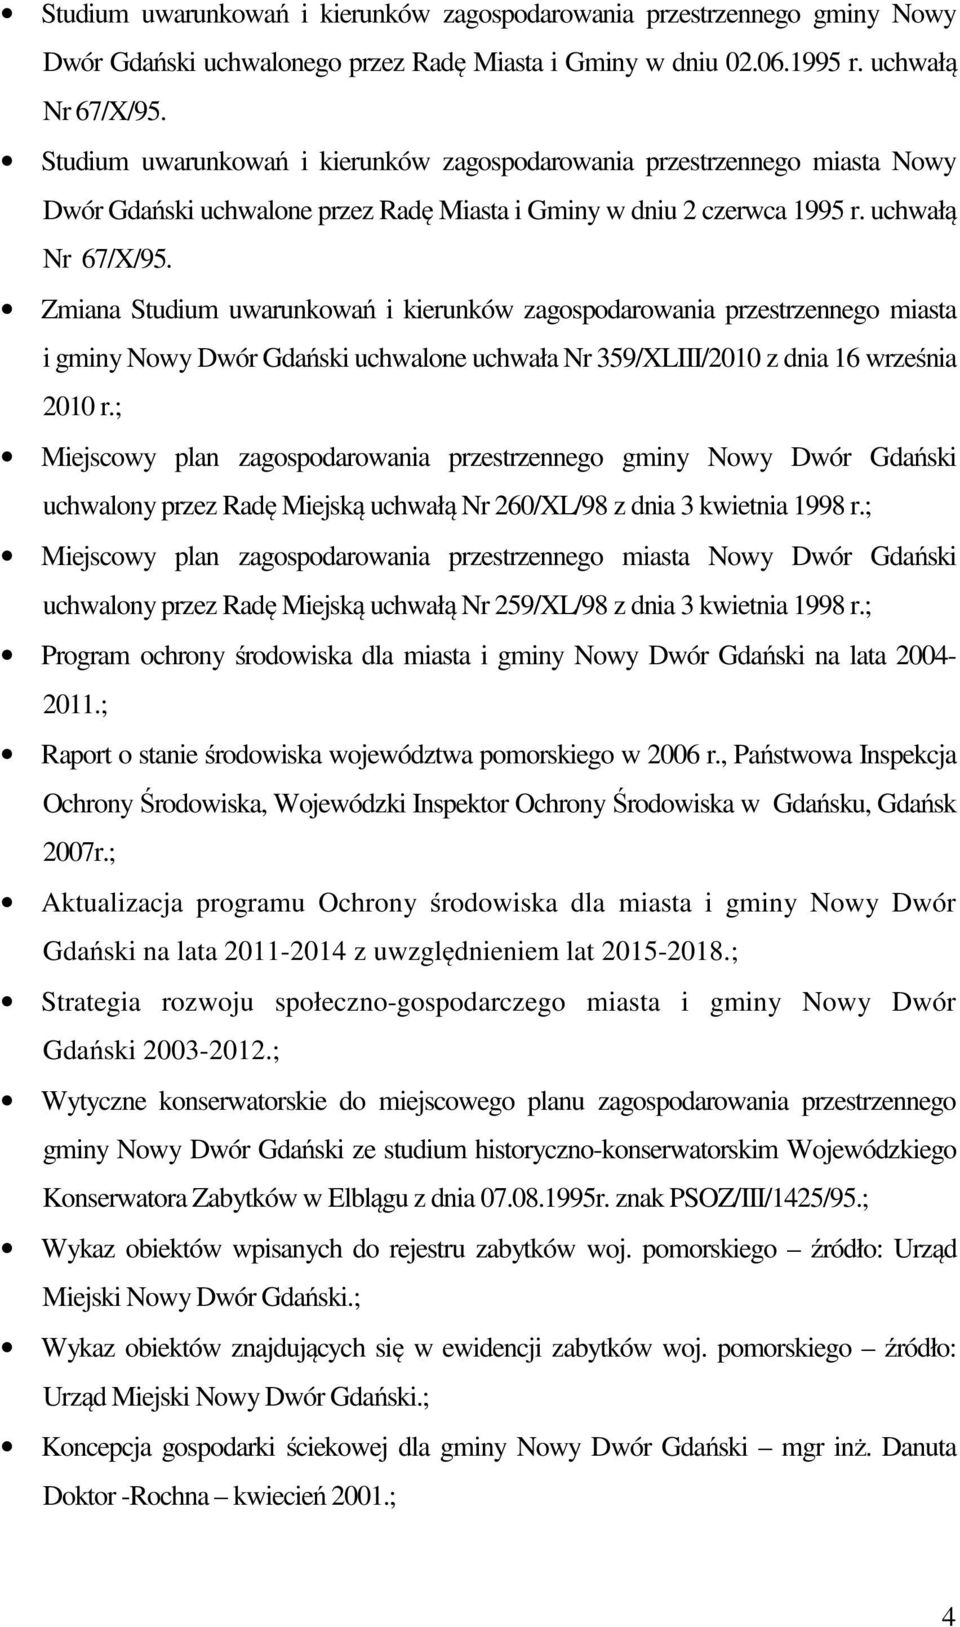 Zmiana Studium uwarunkowań i kierunków zagospodarowania przestrzennego miasta i gminy Nowy Dwór Gdański uchwalone uchwała Nr 359/XLIII/2010 z dnia 16 września 2010 r.